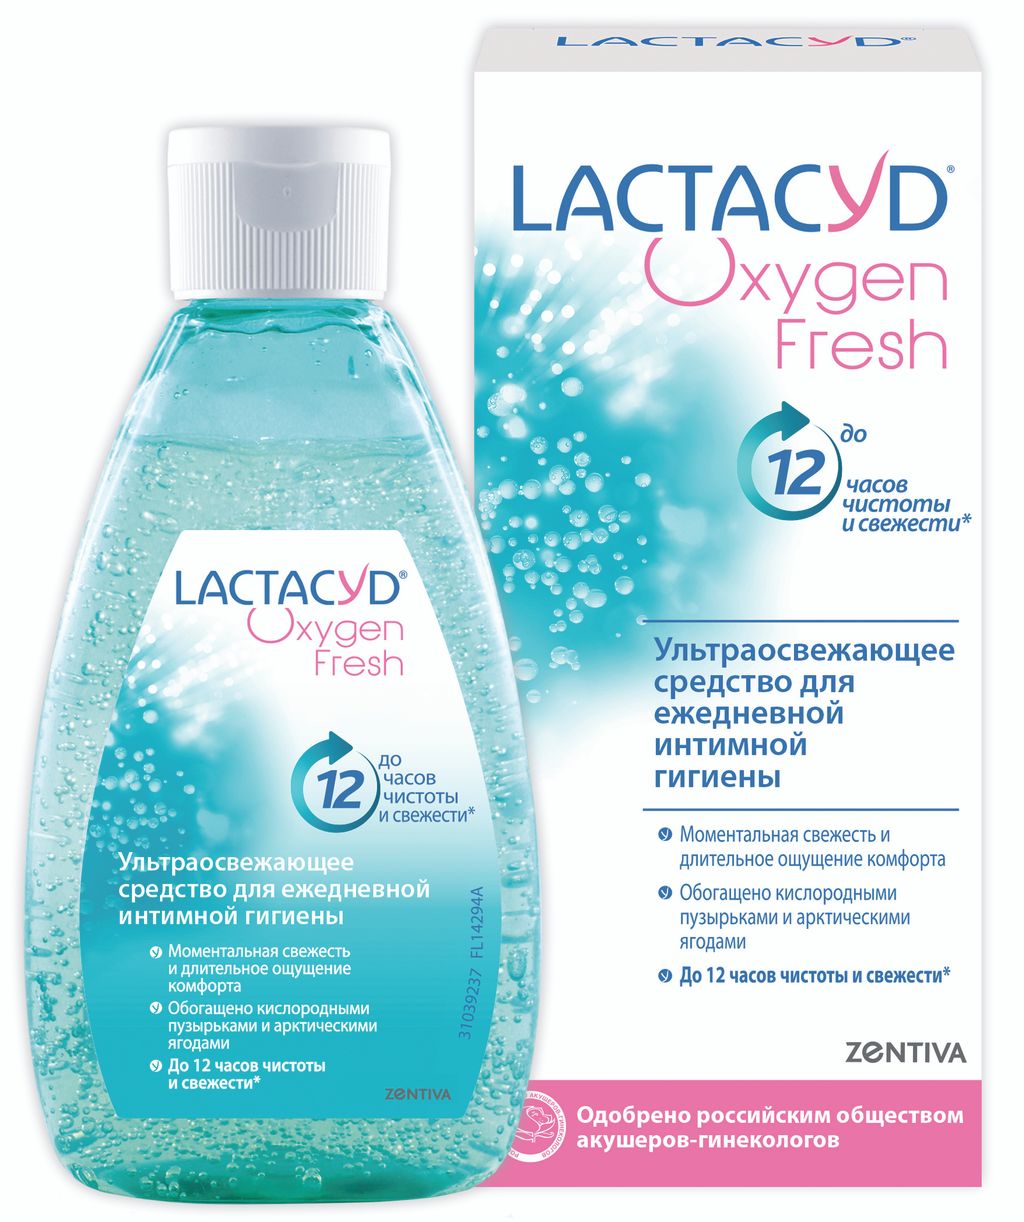 фото упаковки Lactacyd Oxygen Fresh Средство для интимной гигиены